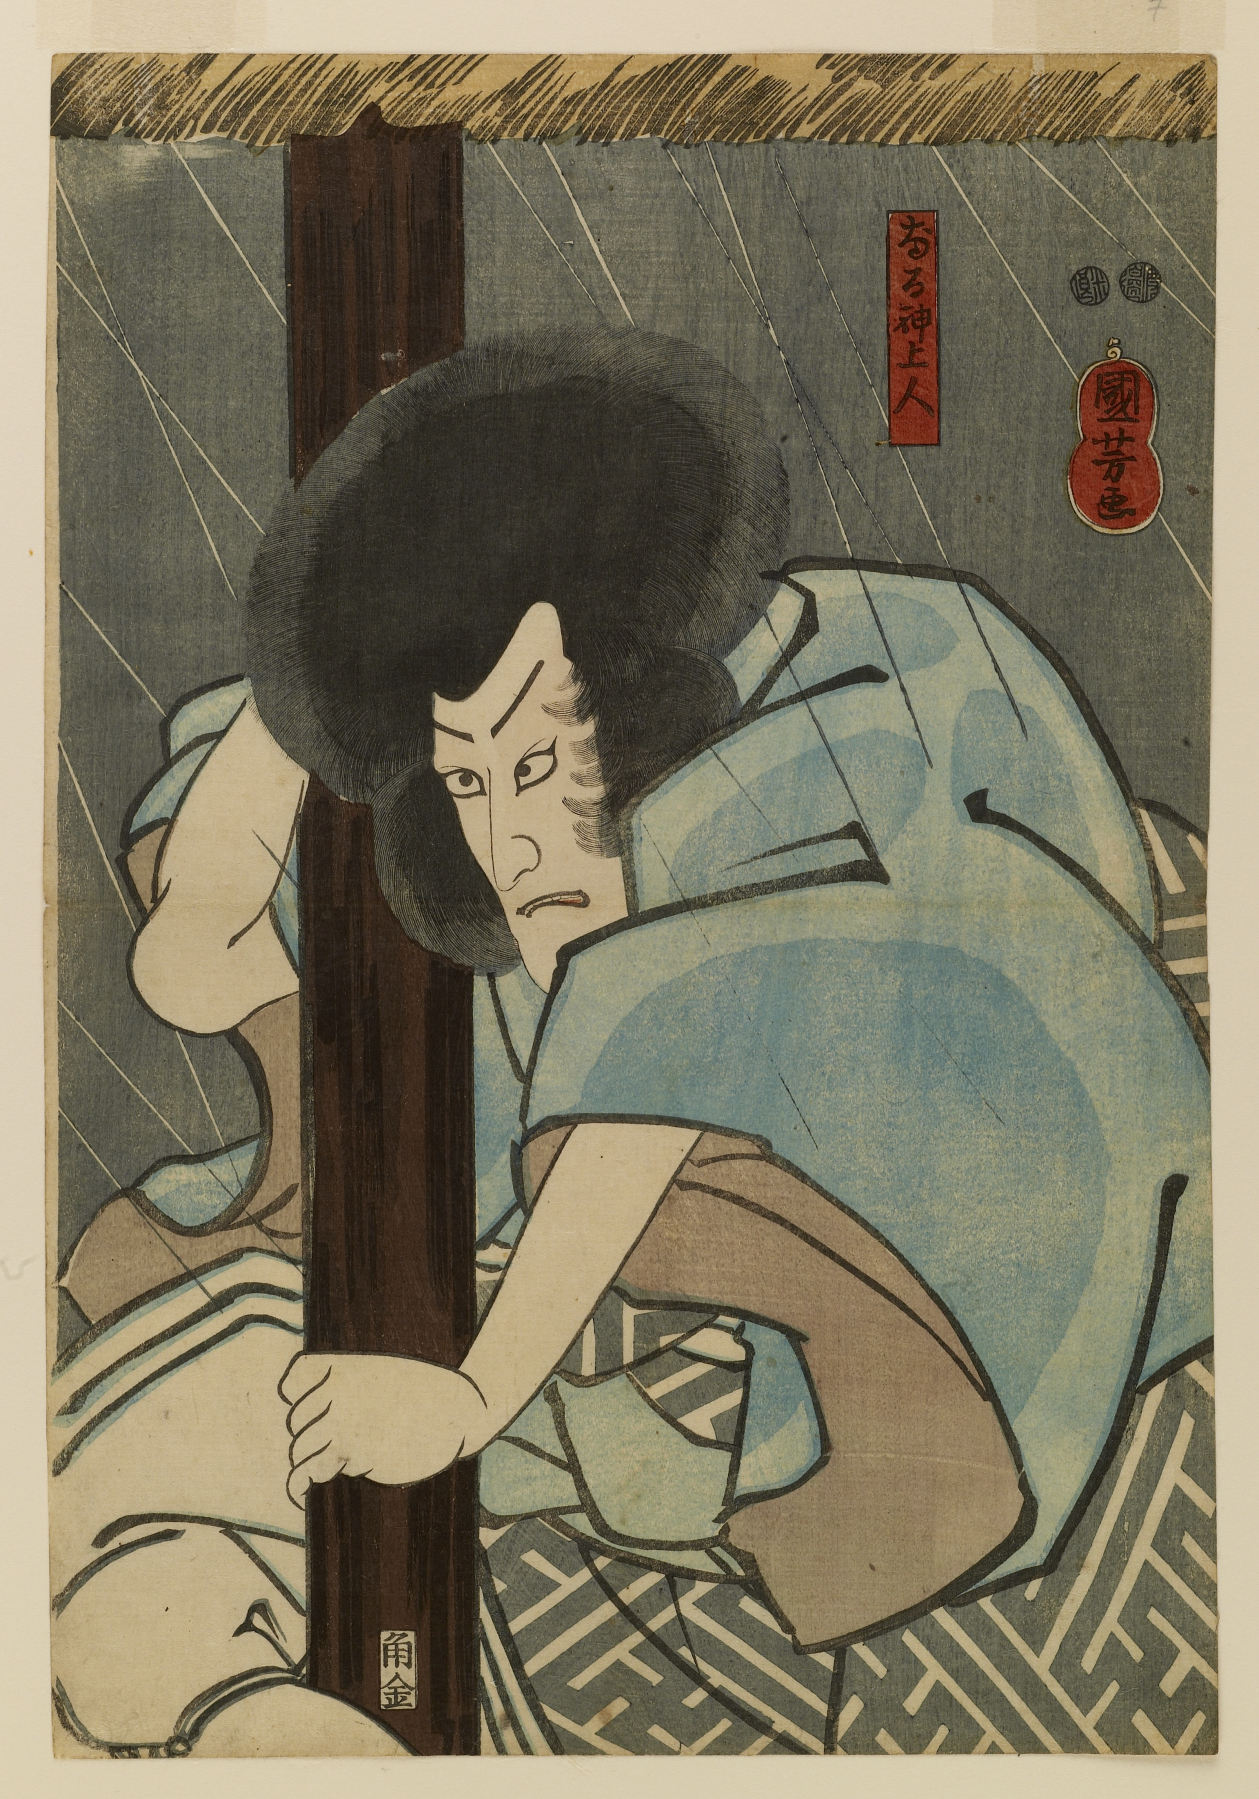 Utagawa Kuniyoshi 18th Century woodcuts Japan Japanese myth legend